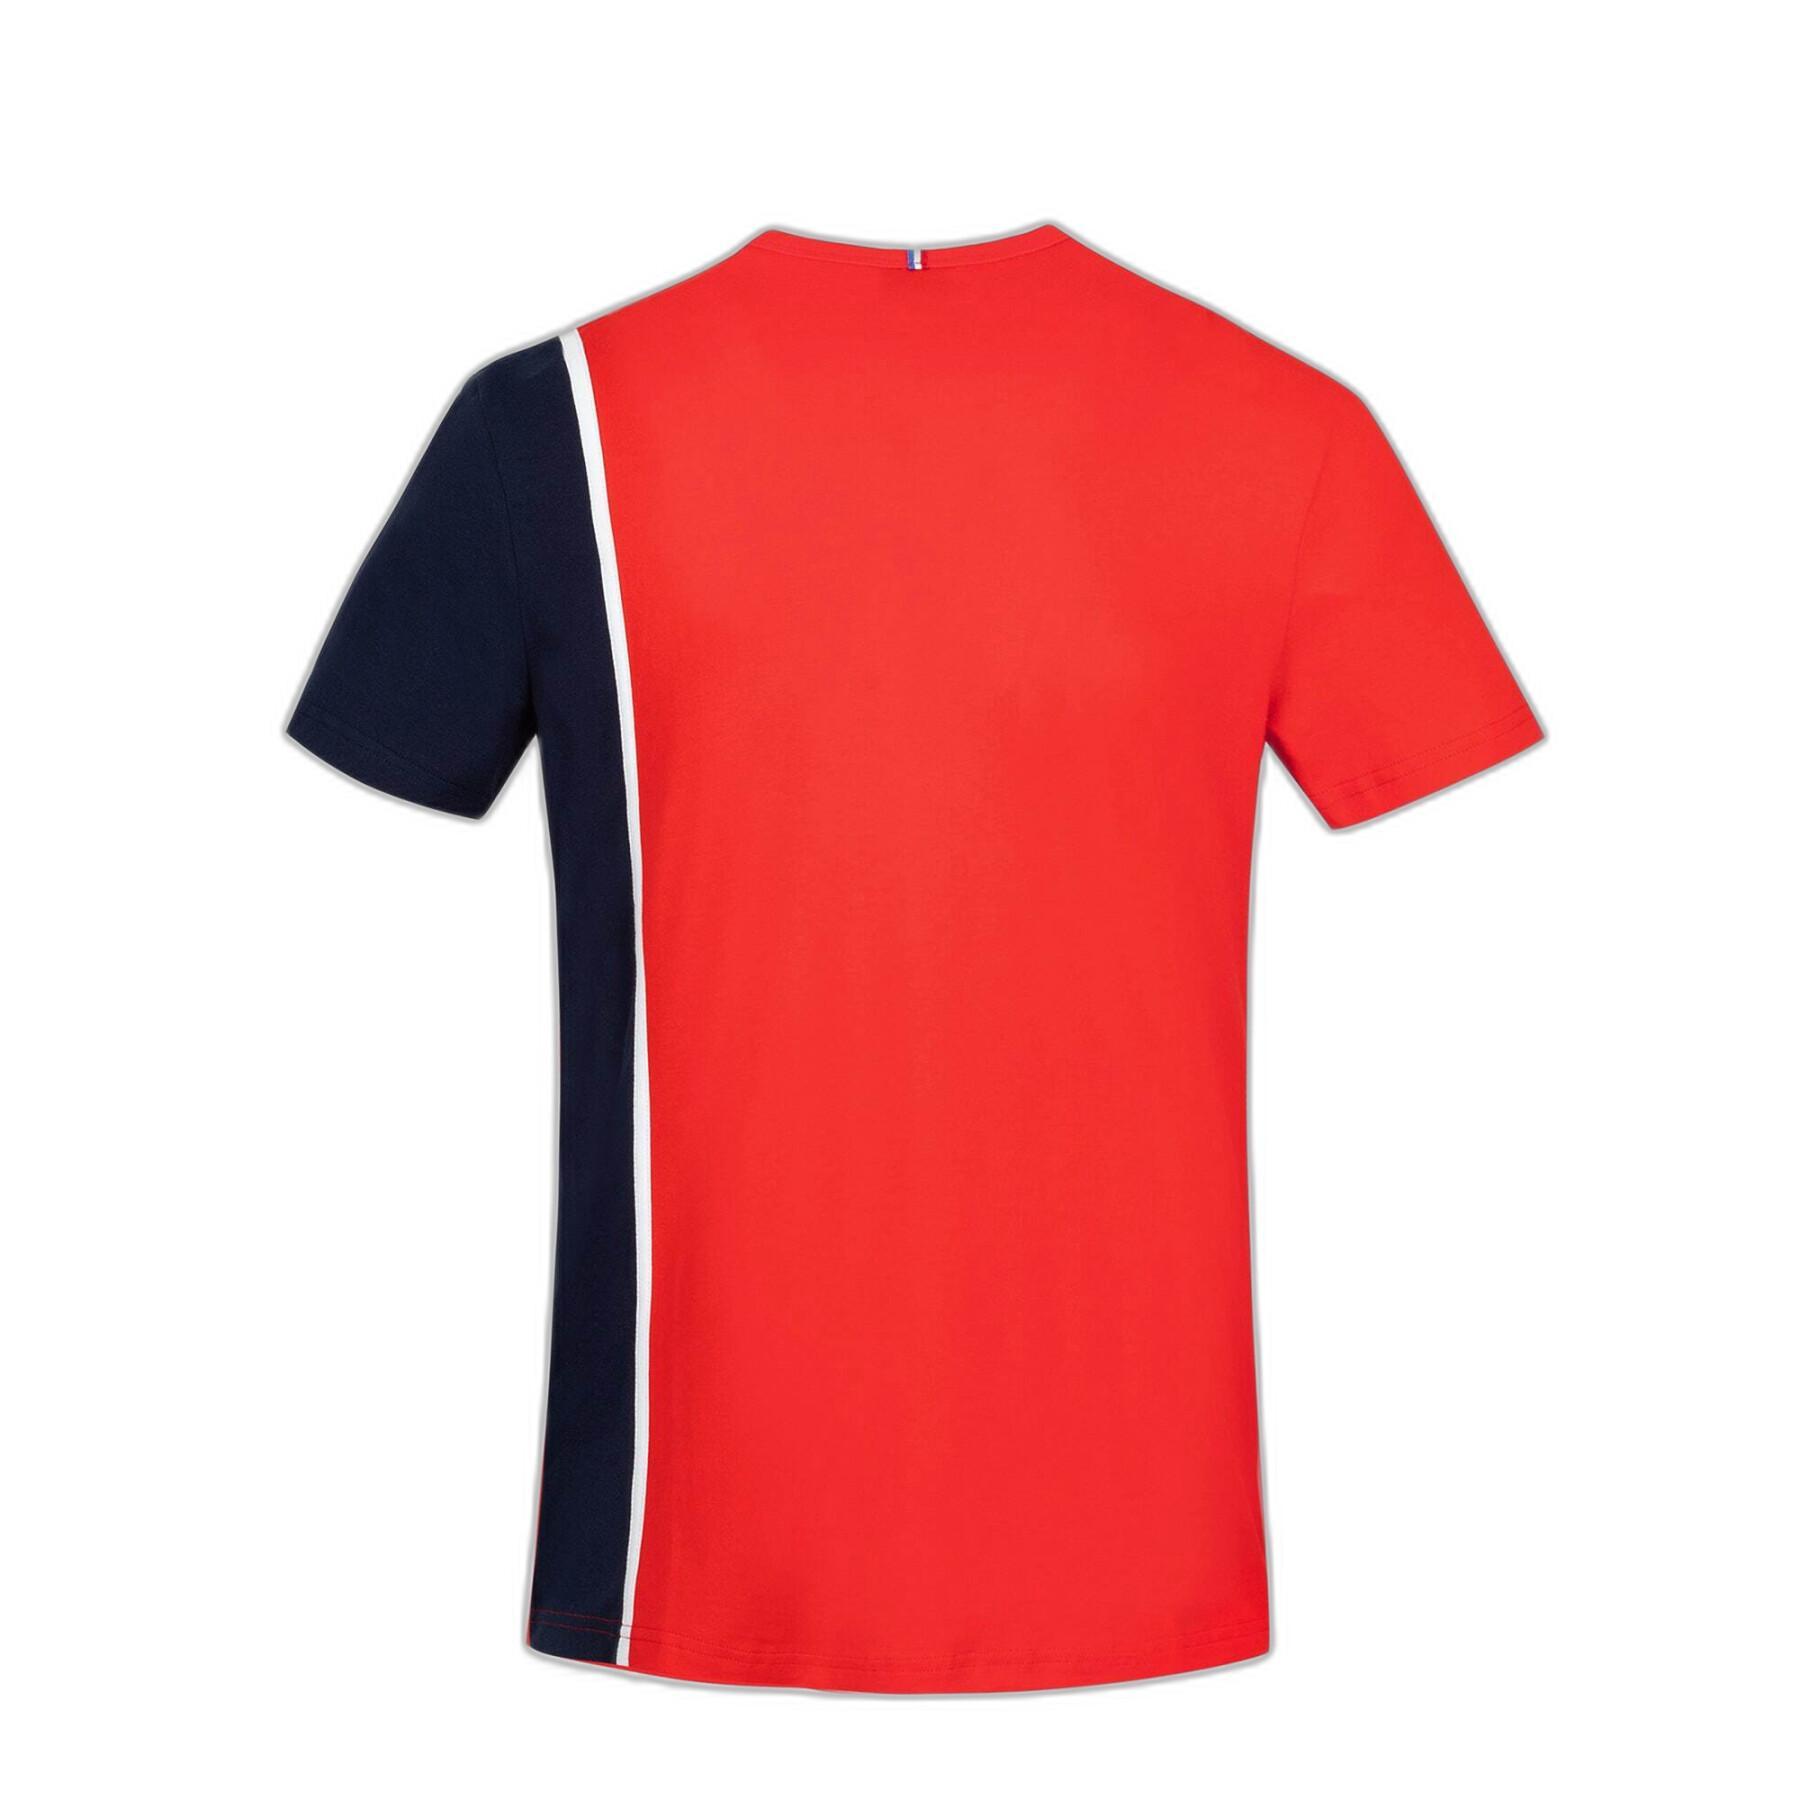 T-shirt manches courtes Le Coq Sportif Saison 1 N°1